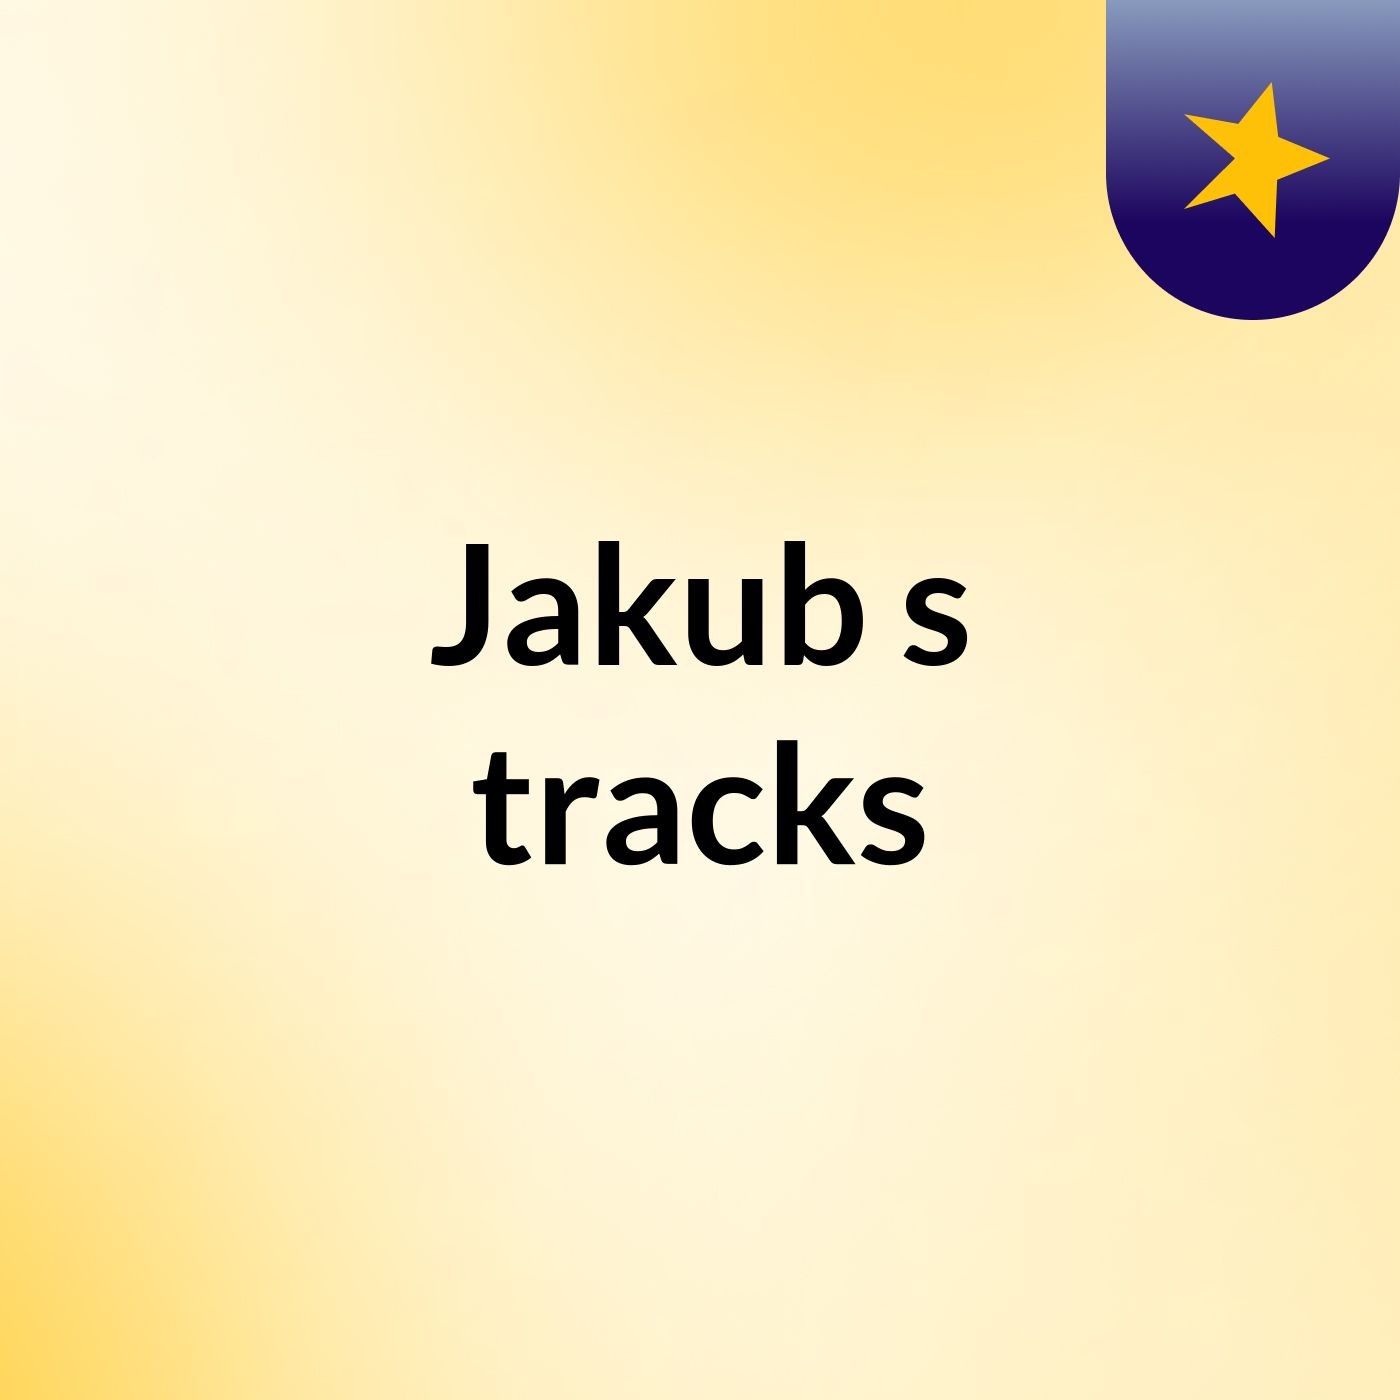 Jakub's tracks